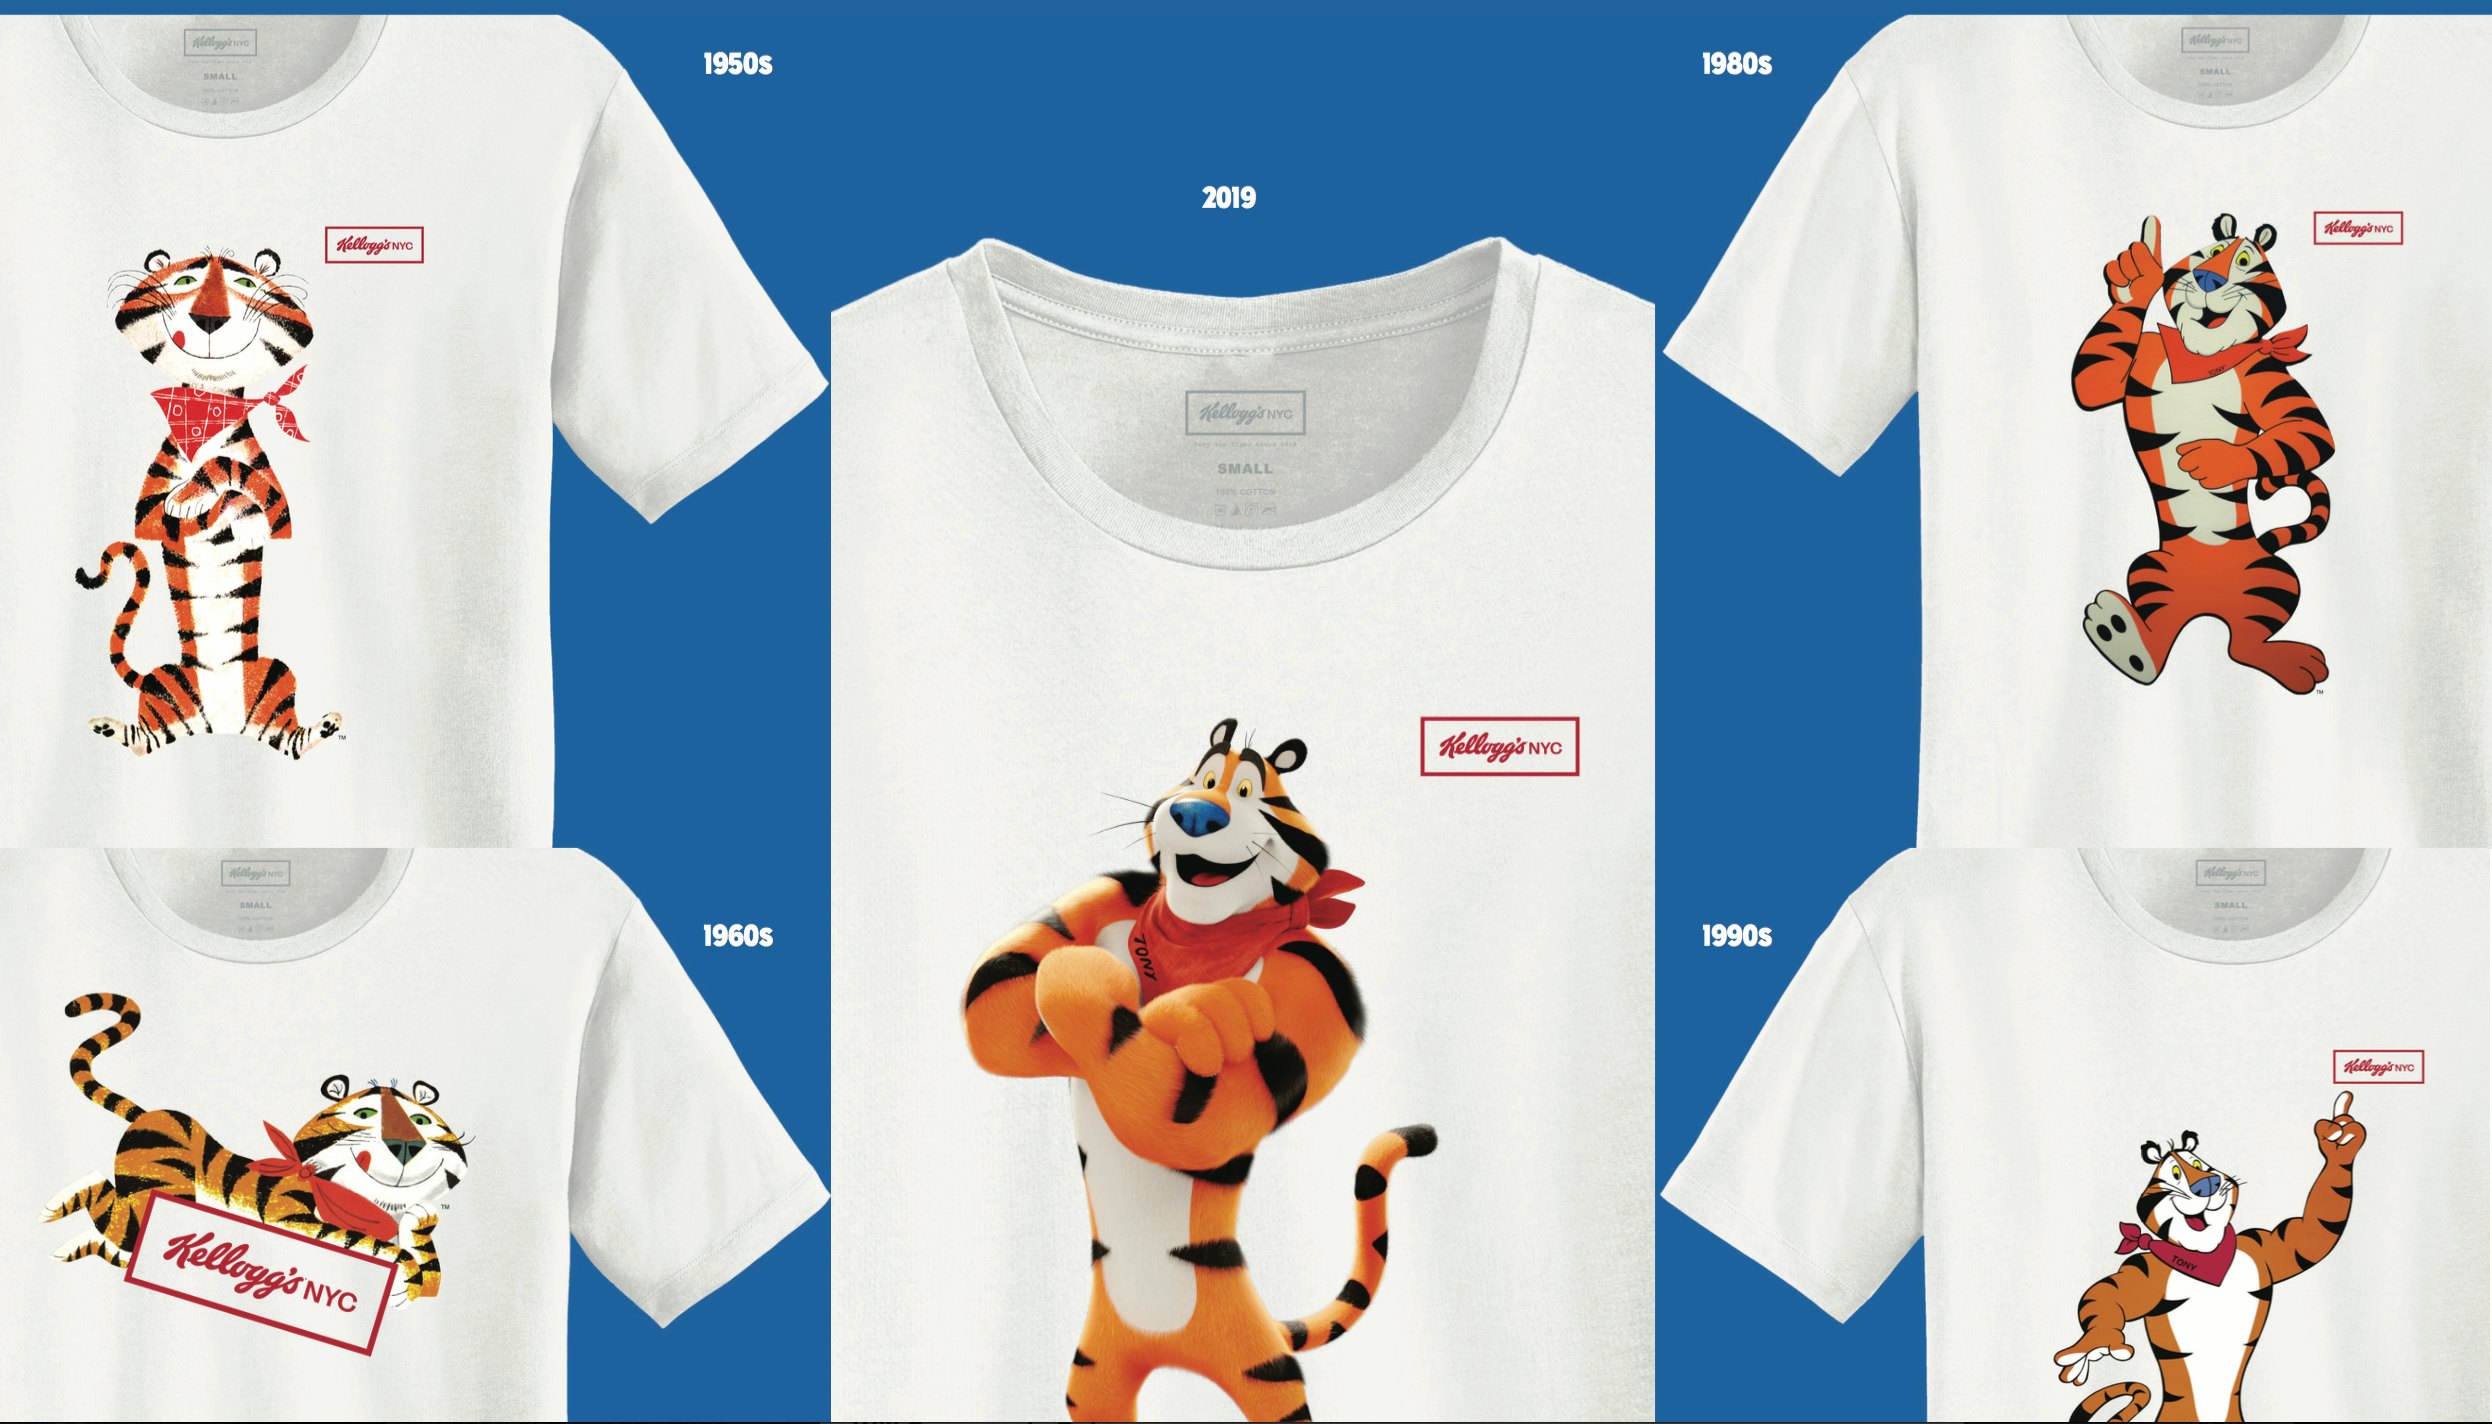 tony the tiger t shirt